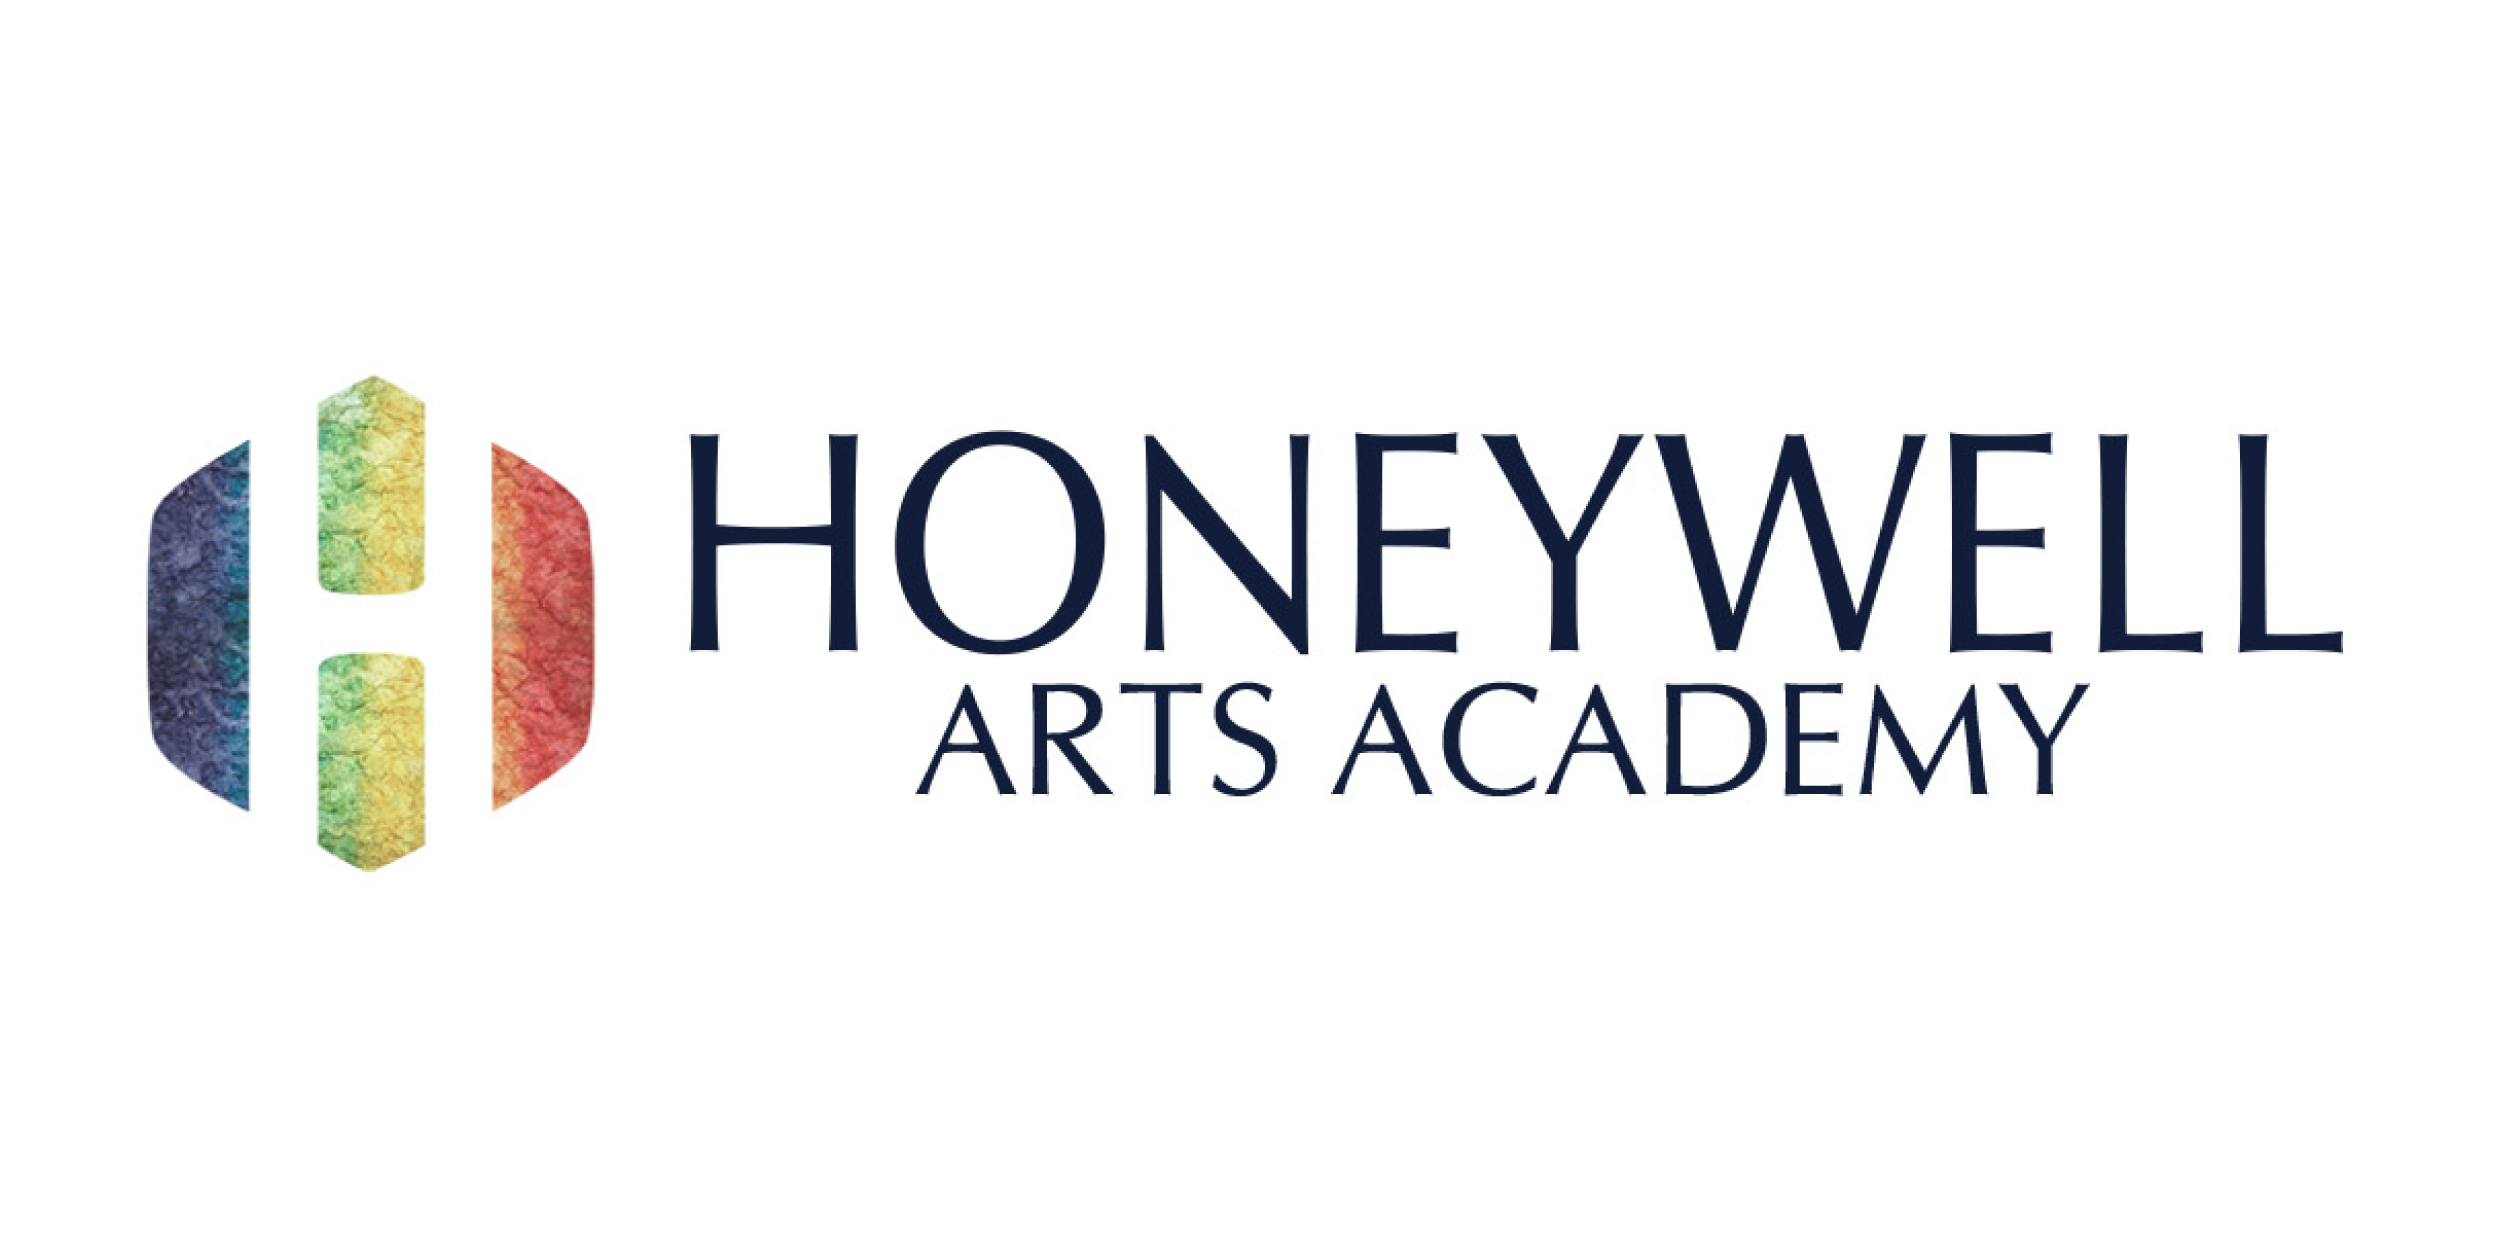 Honeywell Arts Academy